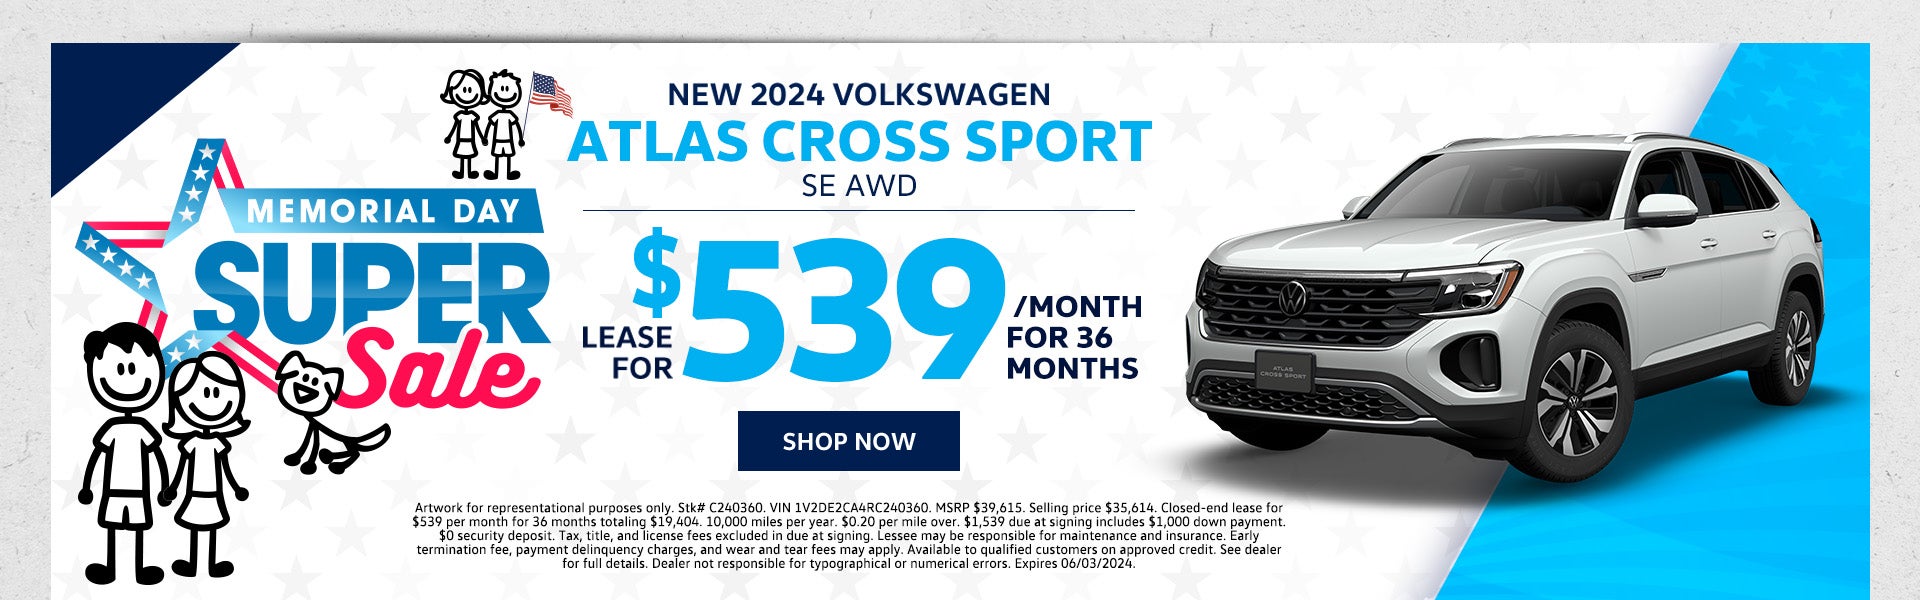 New 2024 VW Atlas Cross Sport SE AWD